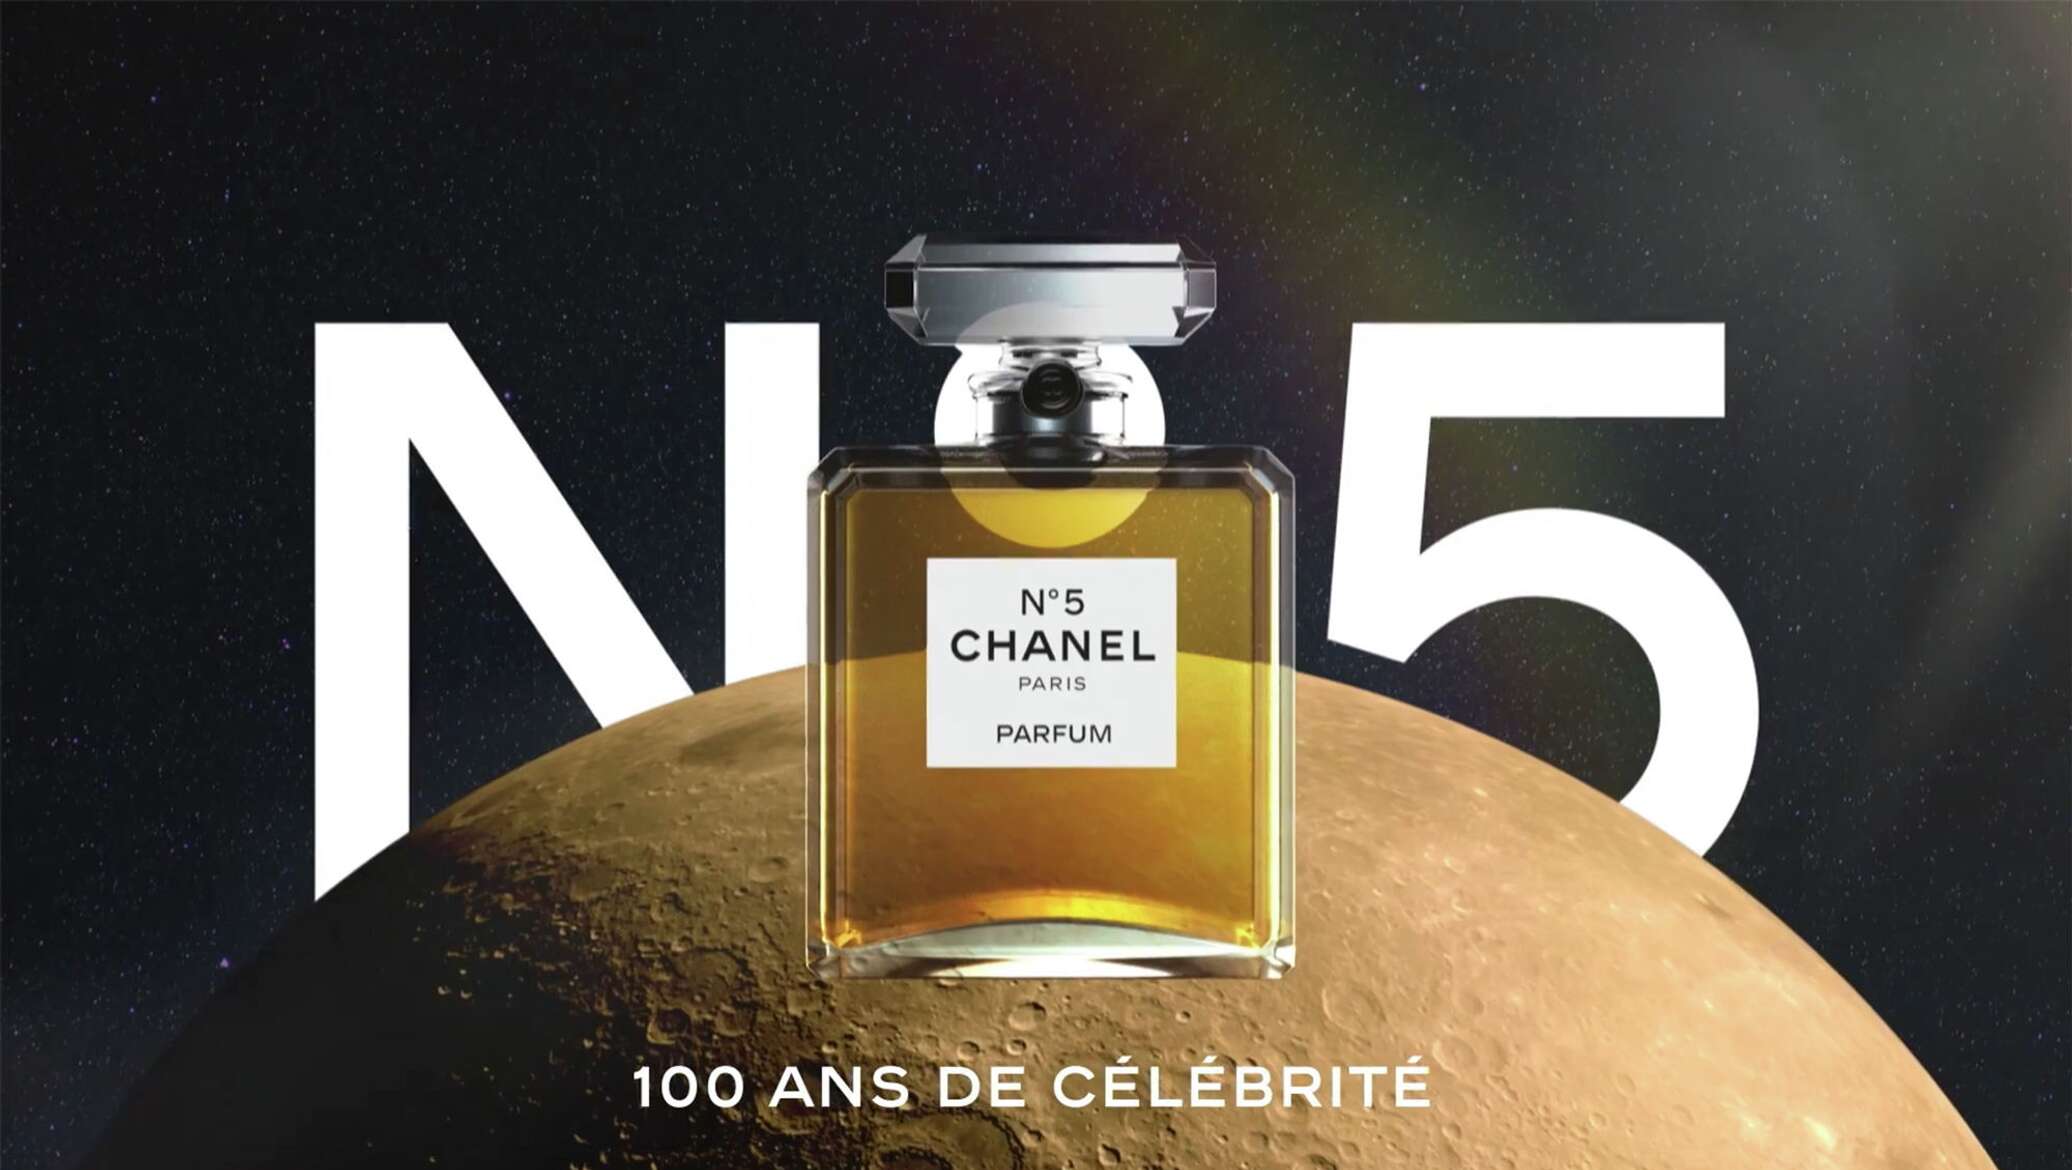 Chanel выпустили ролик к столетию культового аромата. Смотрим